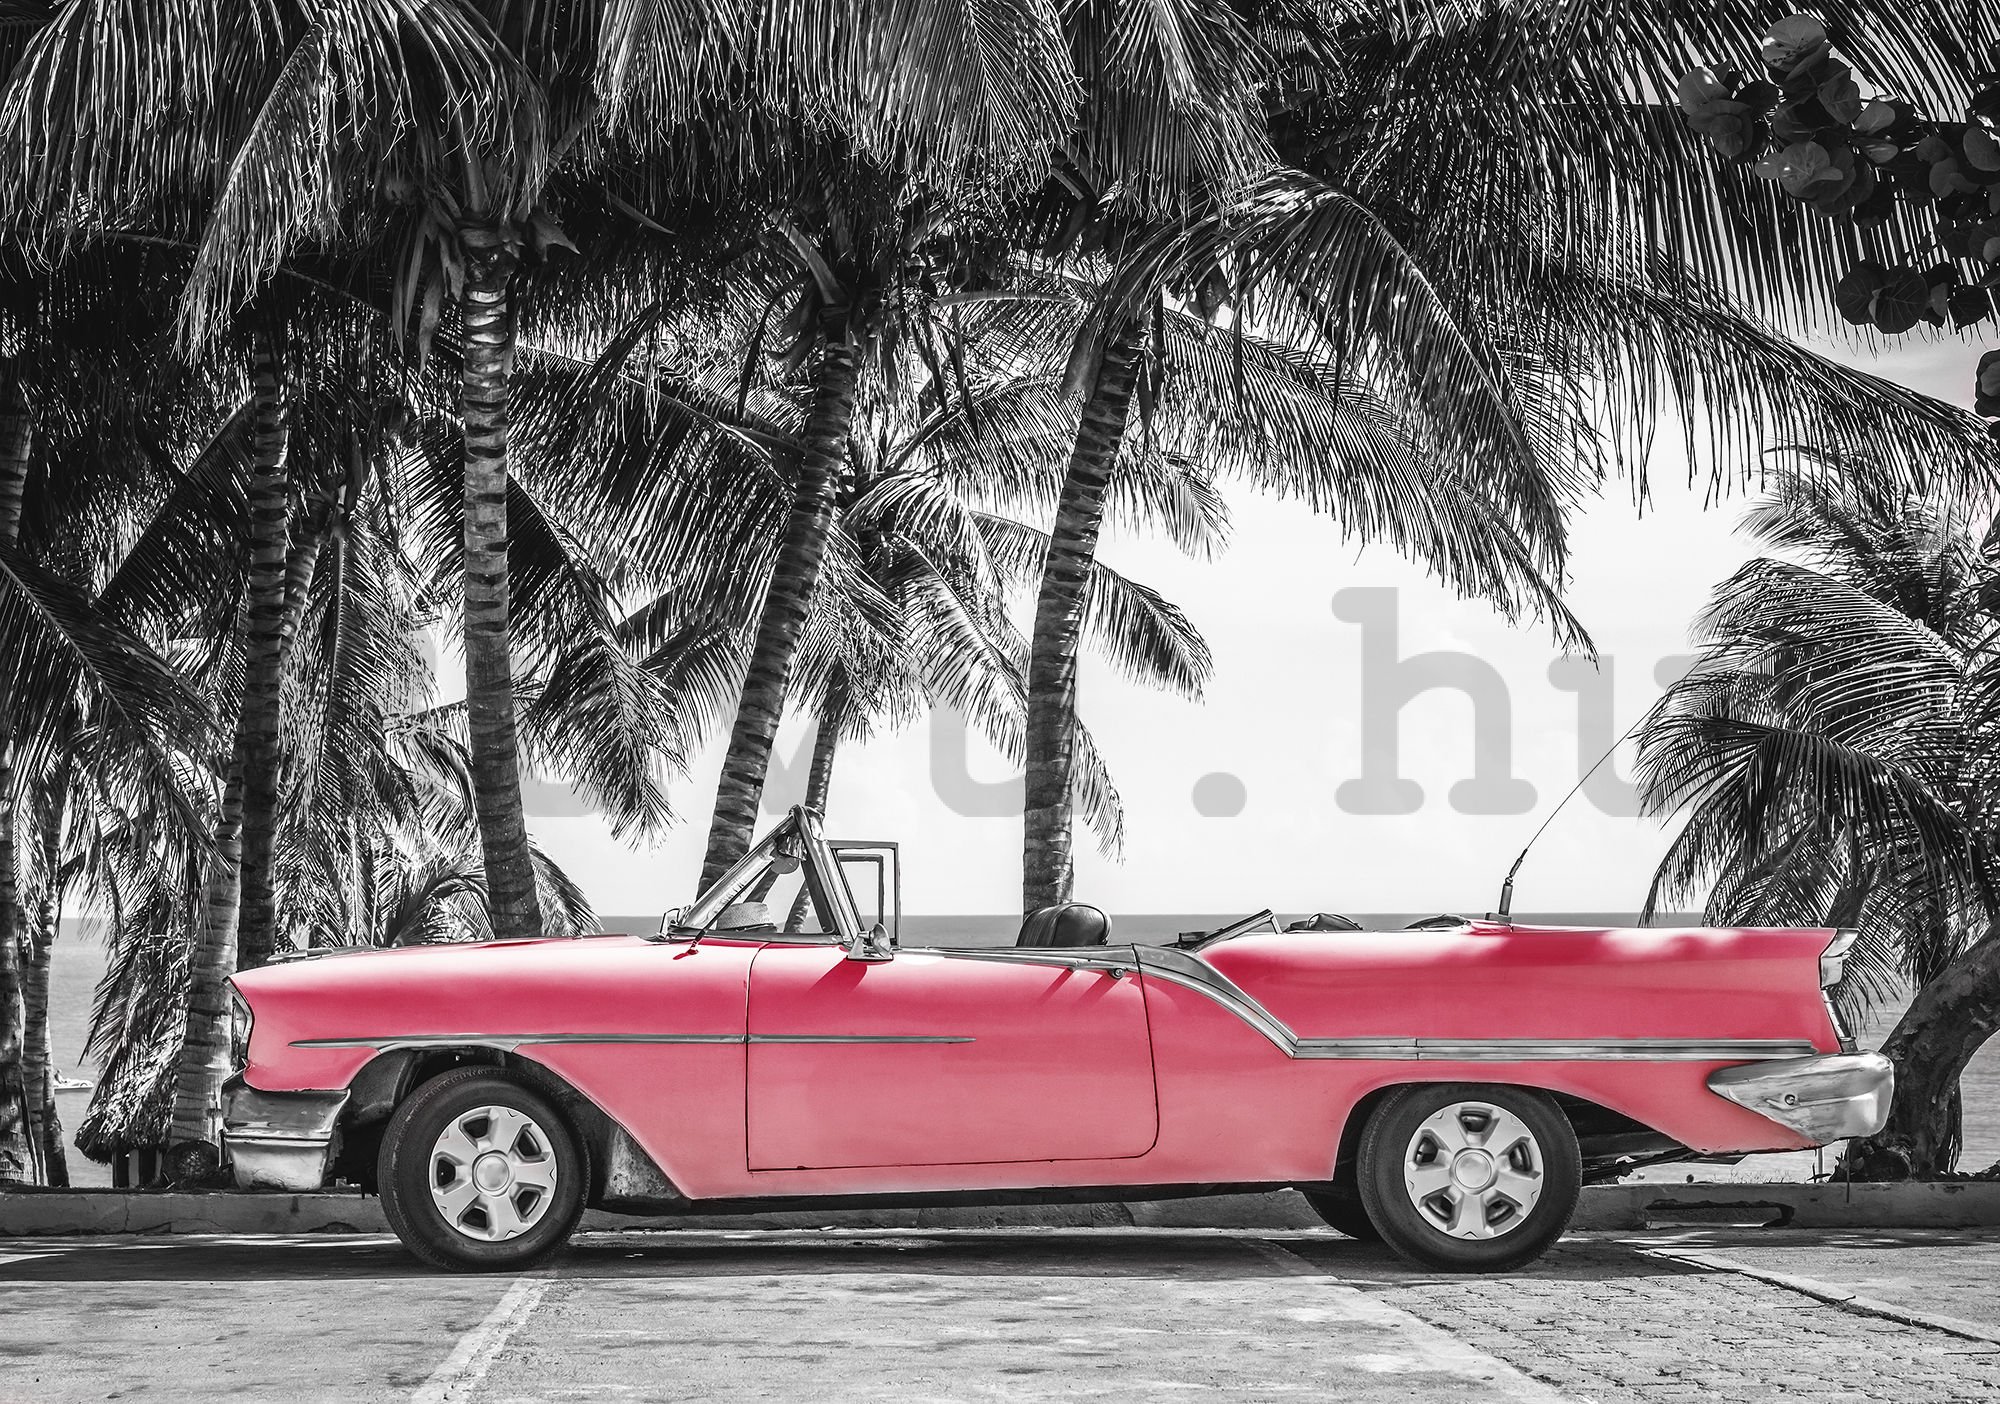 Vlies fotótapéta: Kuba piros autó - 254x368 cm